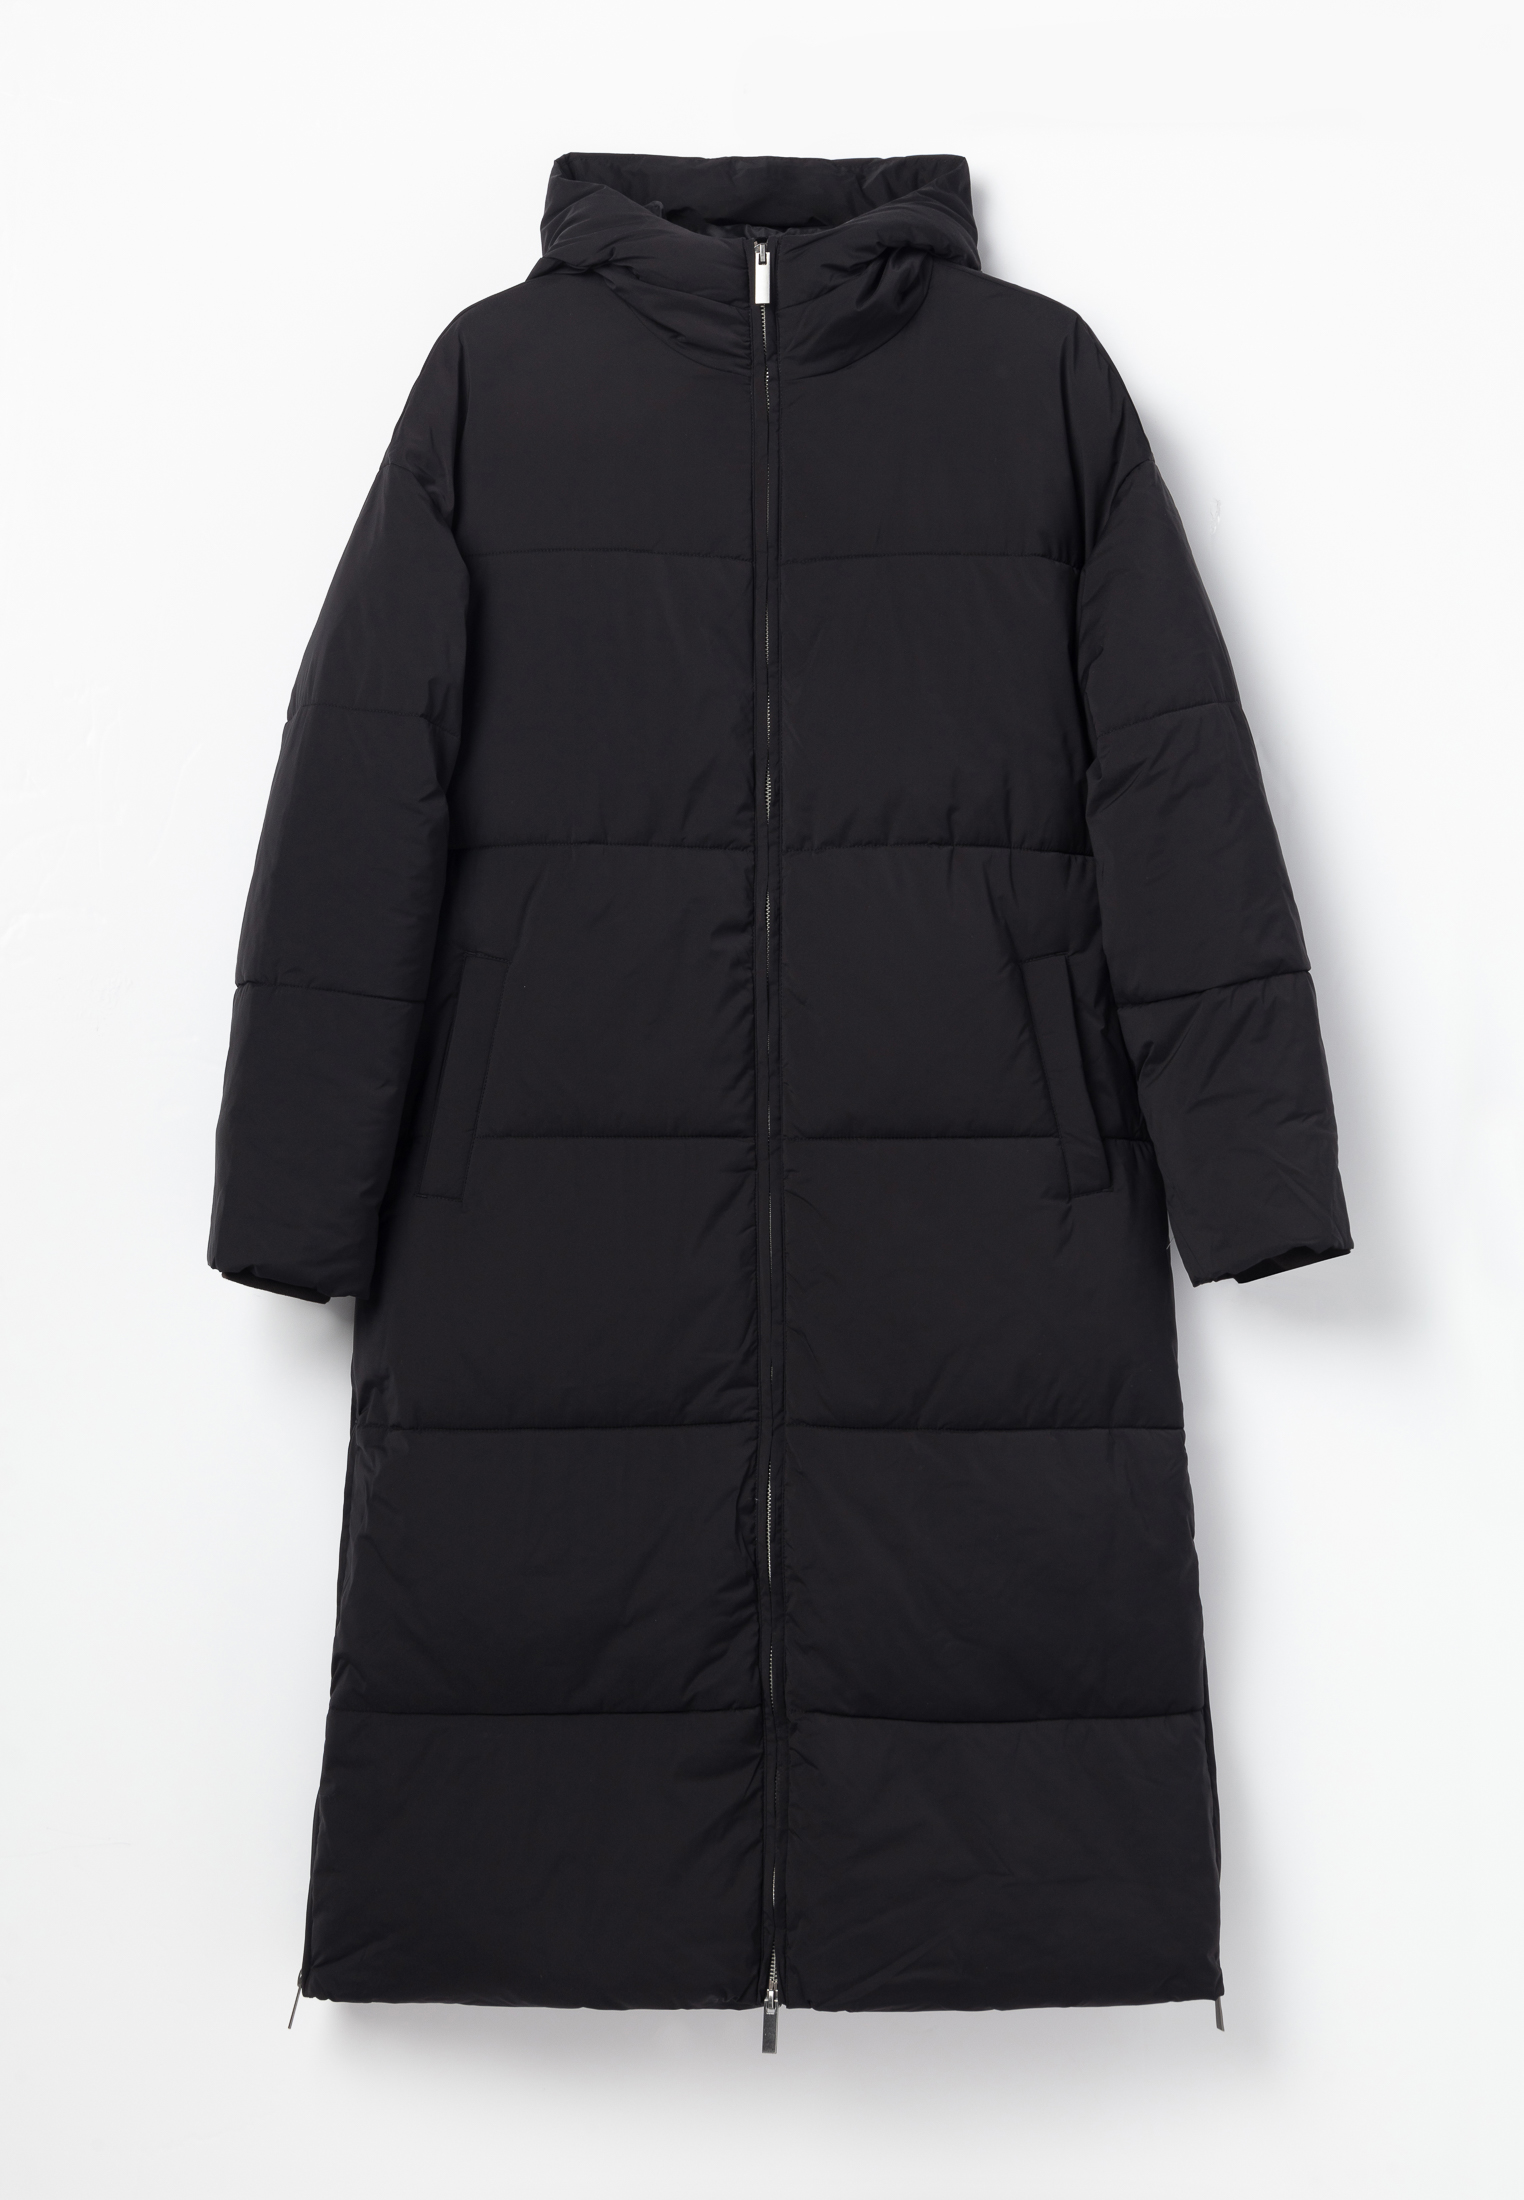 Пальто Thomas Munz 859-32N-0502, цвет черный, размер 46-164-170